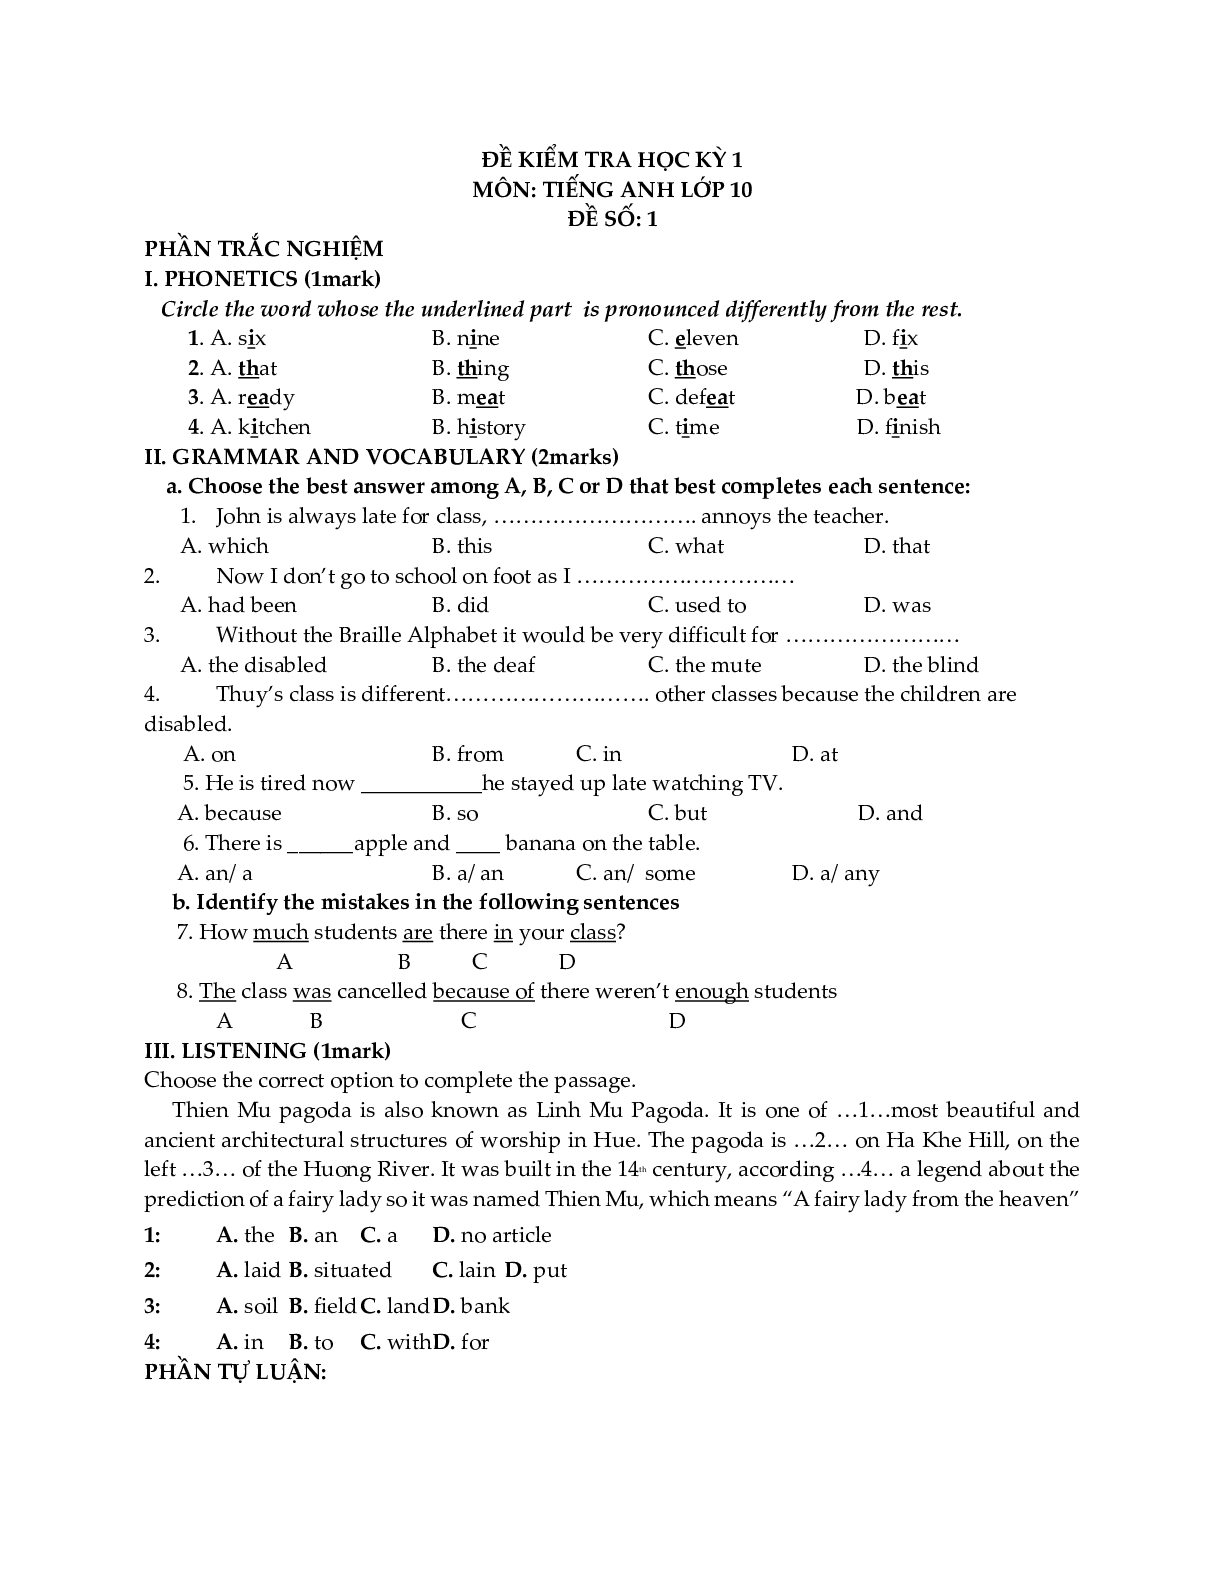 Đề kiểm tra Tiếng Anh 10 học kỳ 1 (có đáp án) (trang 1)